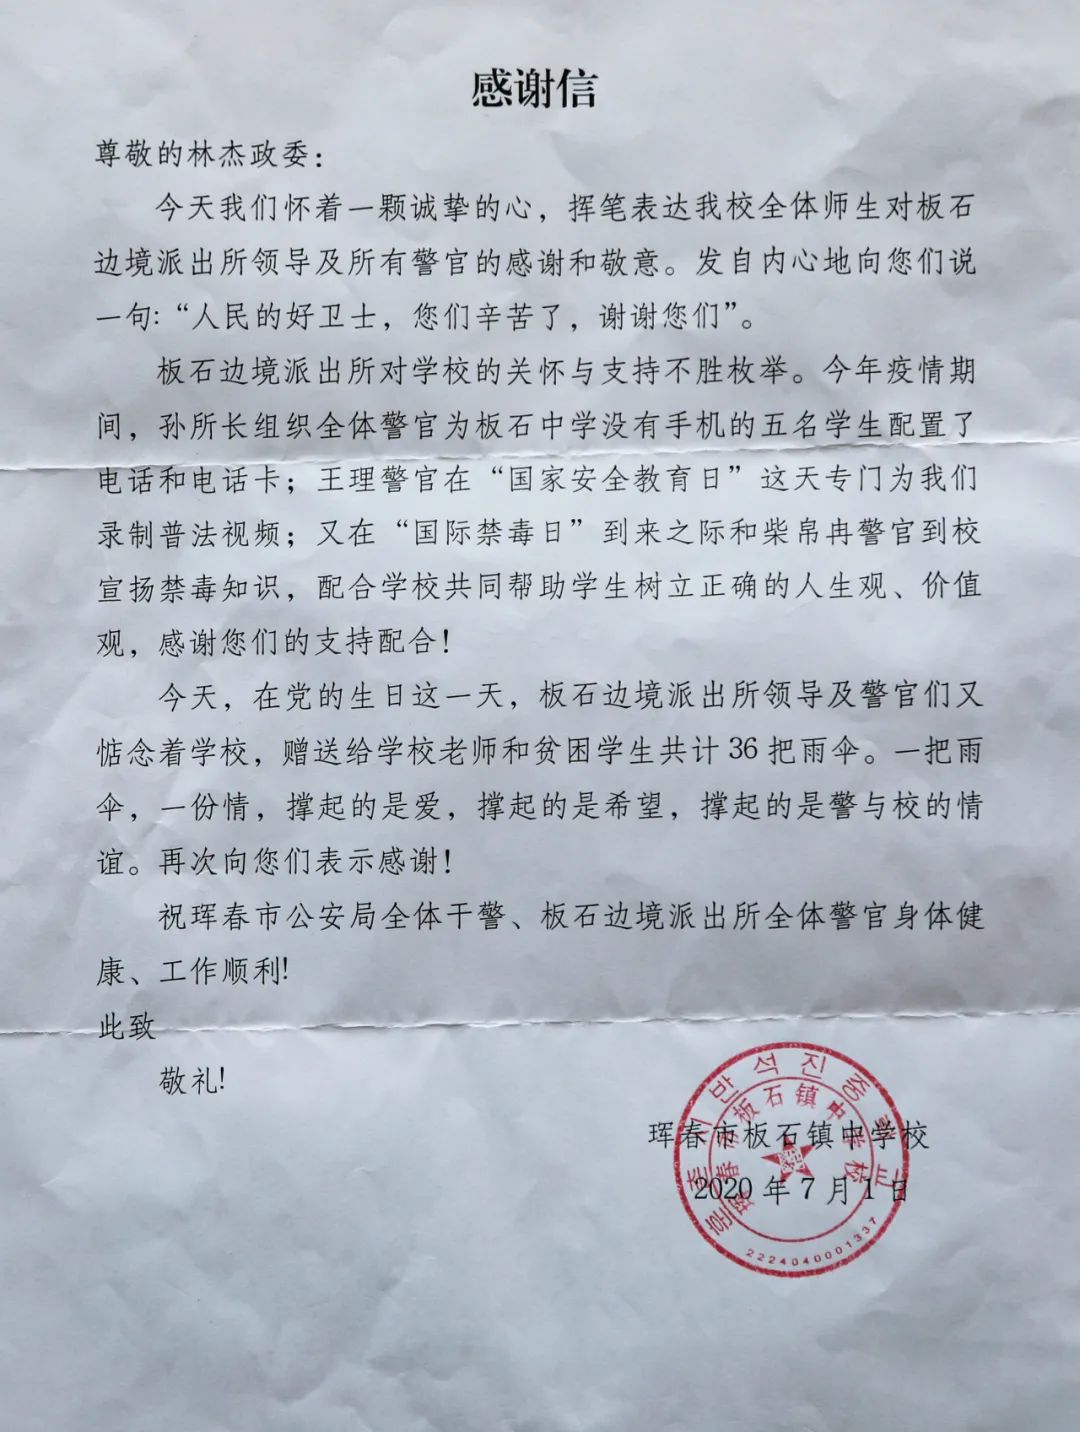 【护校有绩】板石镇中学校到珲春市公安局送感谢信